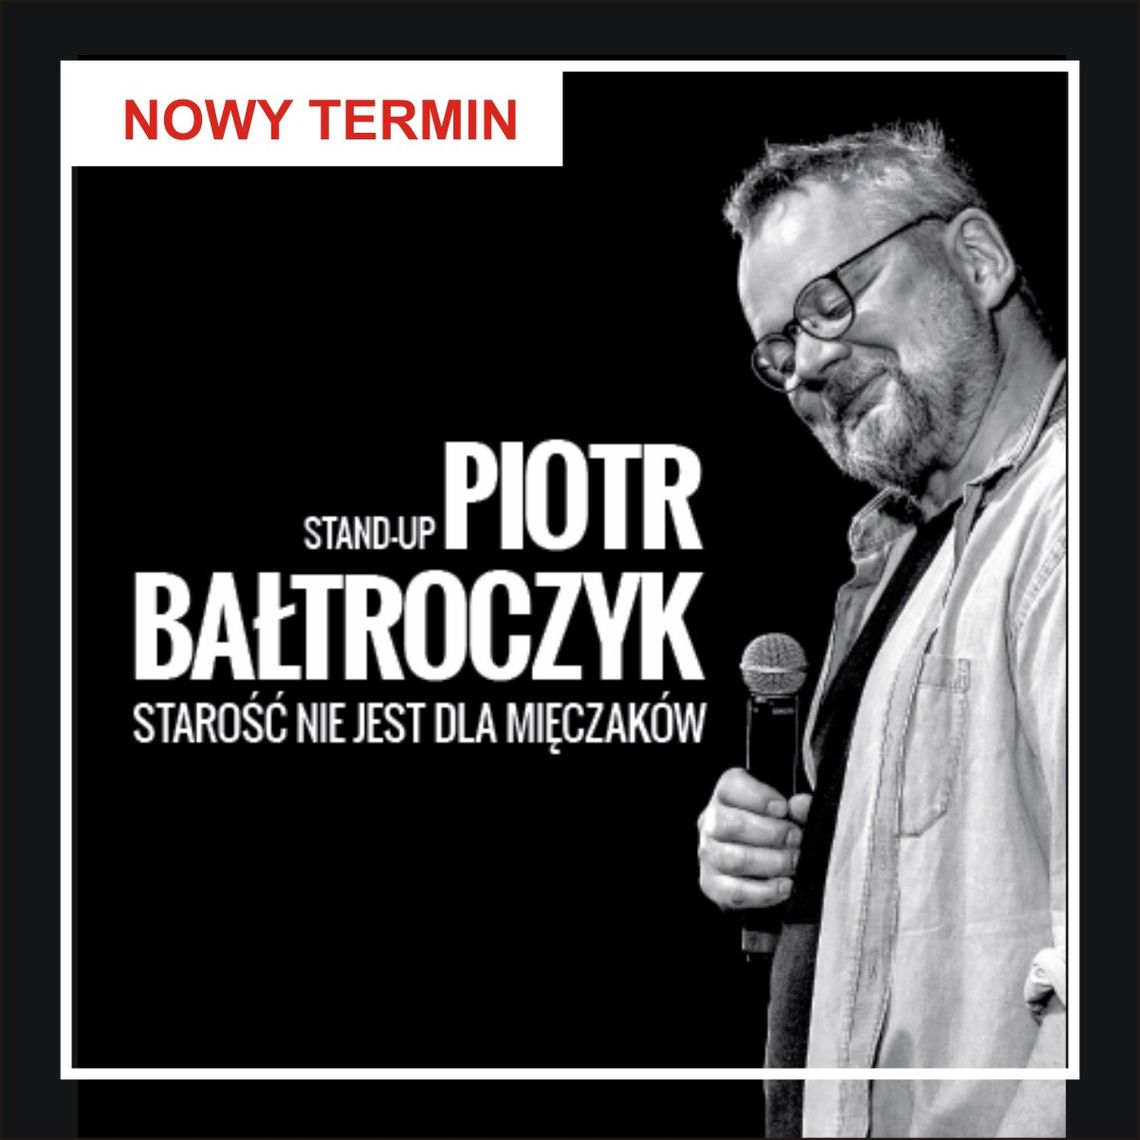 Przesunięty stand up Piotra Bałtroczyka. Zwrot biletu lub czekanie do 14 grudnia